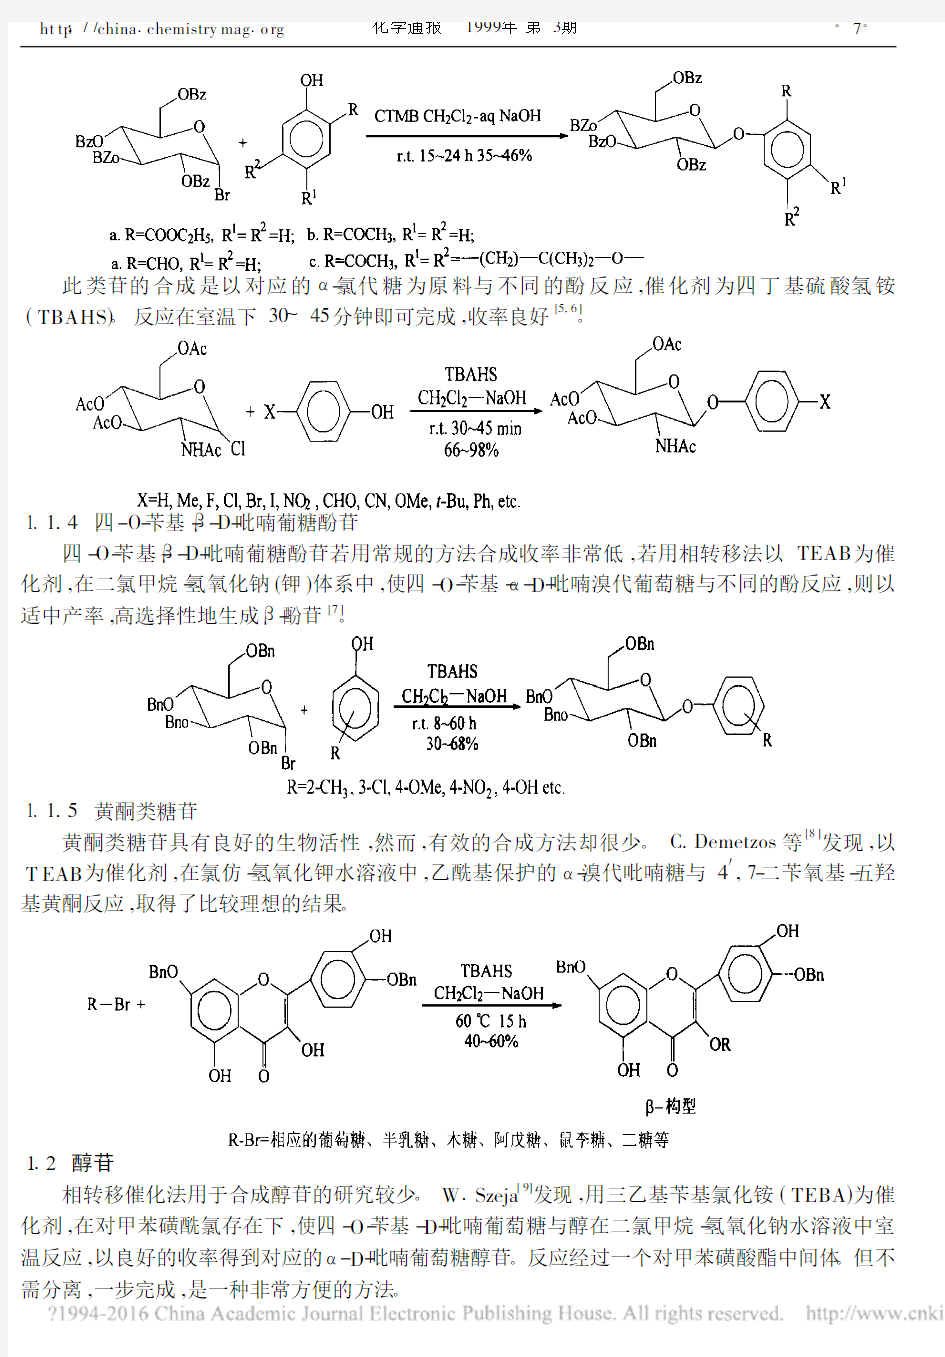 相转移催化法在糖苷化反应中的应用